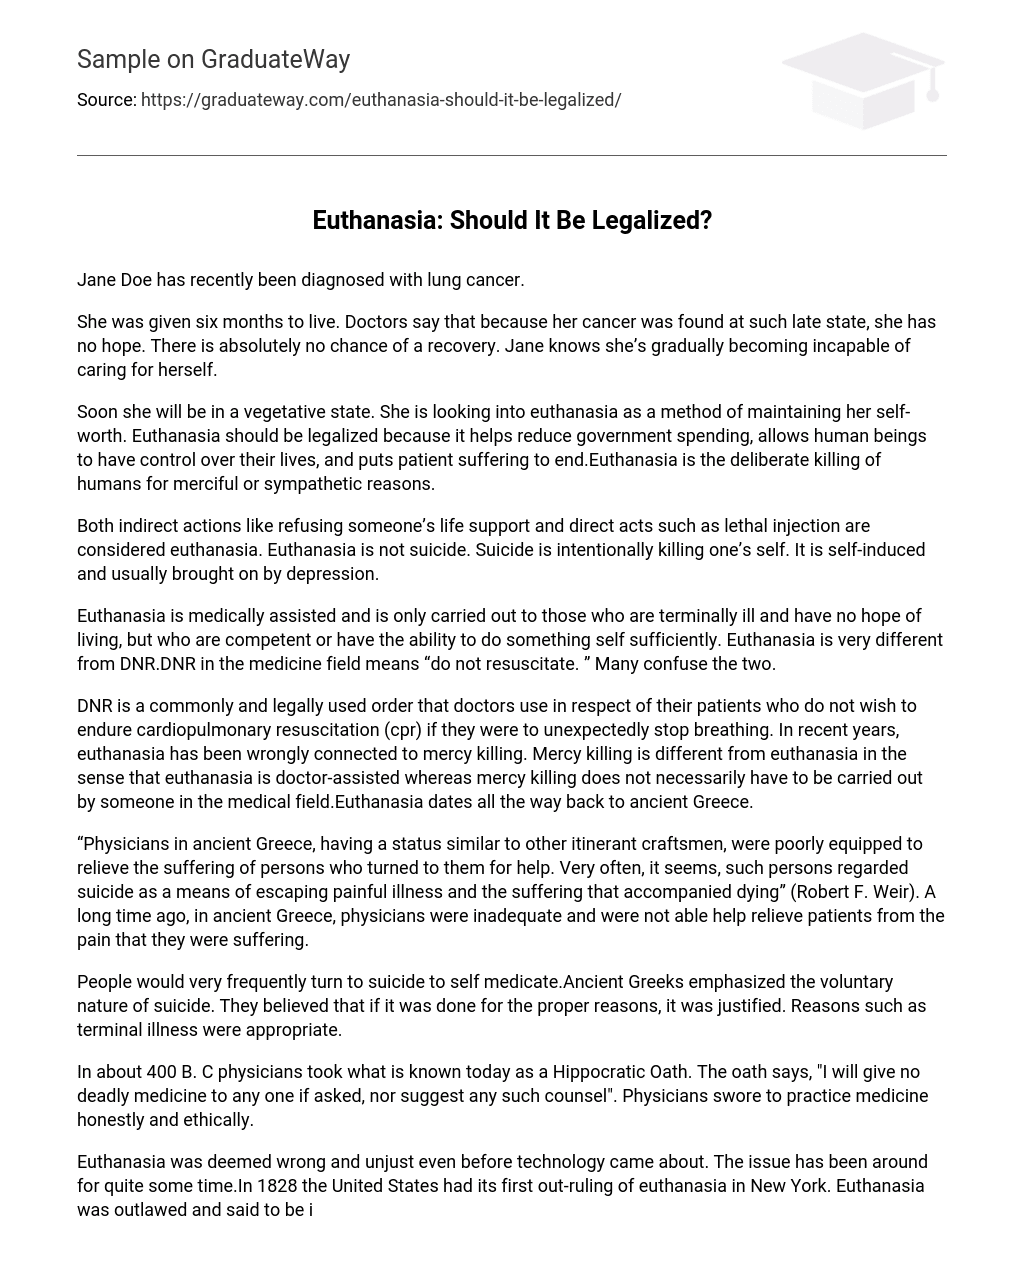 argumentative essay euthanasia should be legalized